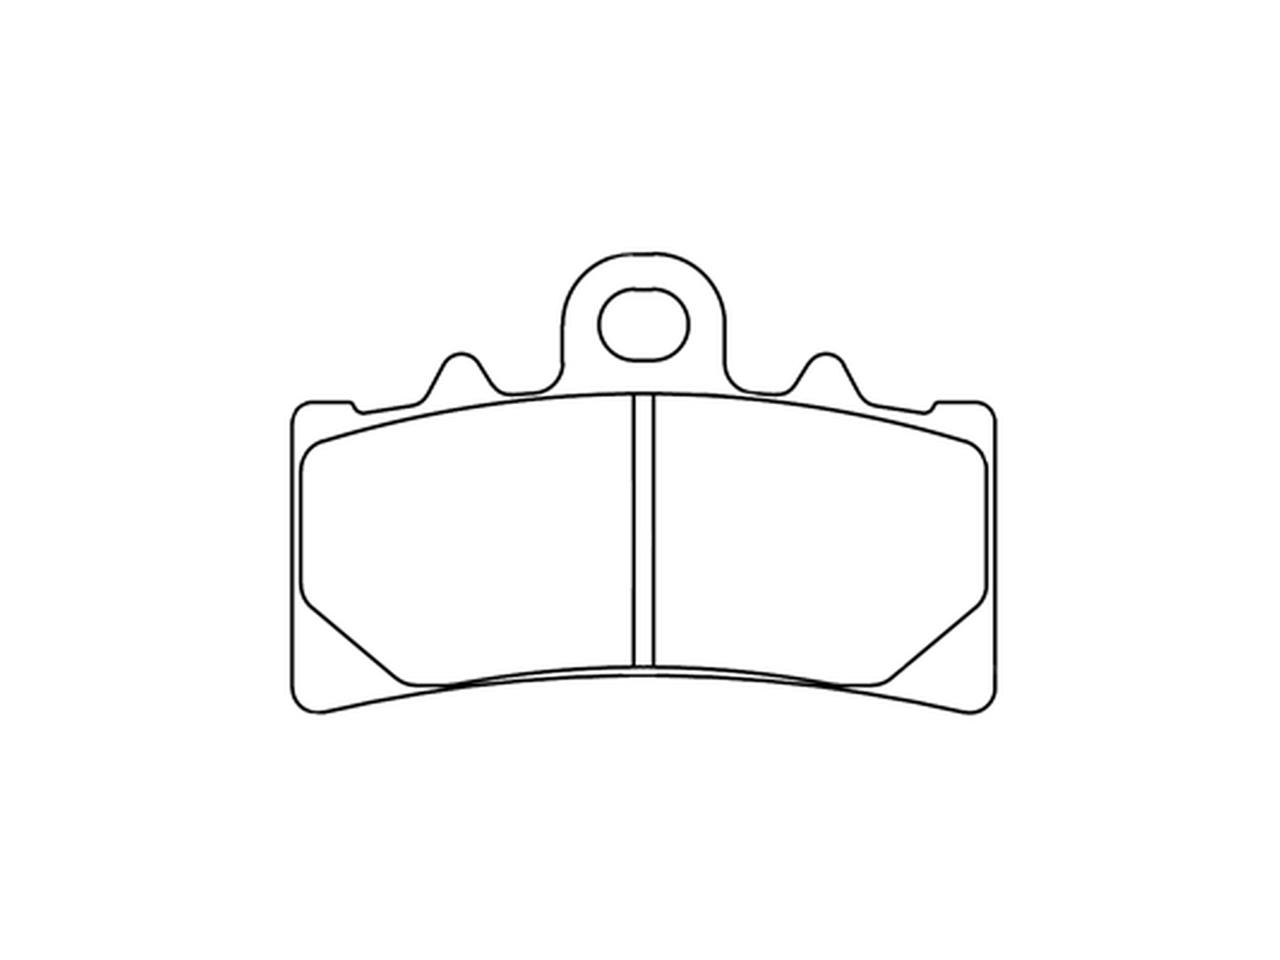 Plaquettes de frein CL Brakes métal fritté indice A3+ (1233A3+)